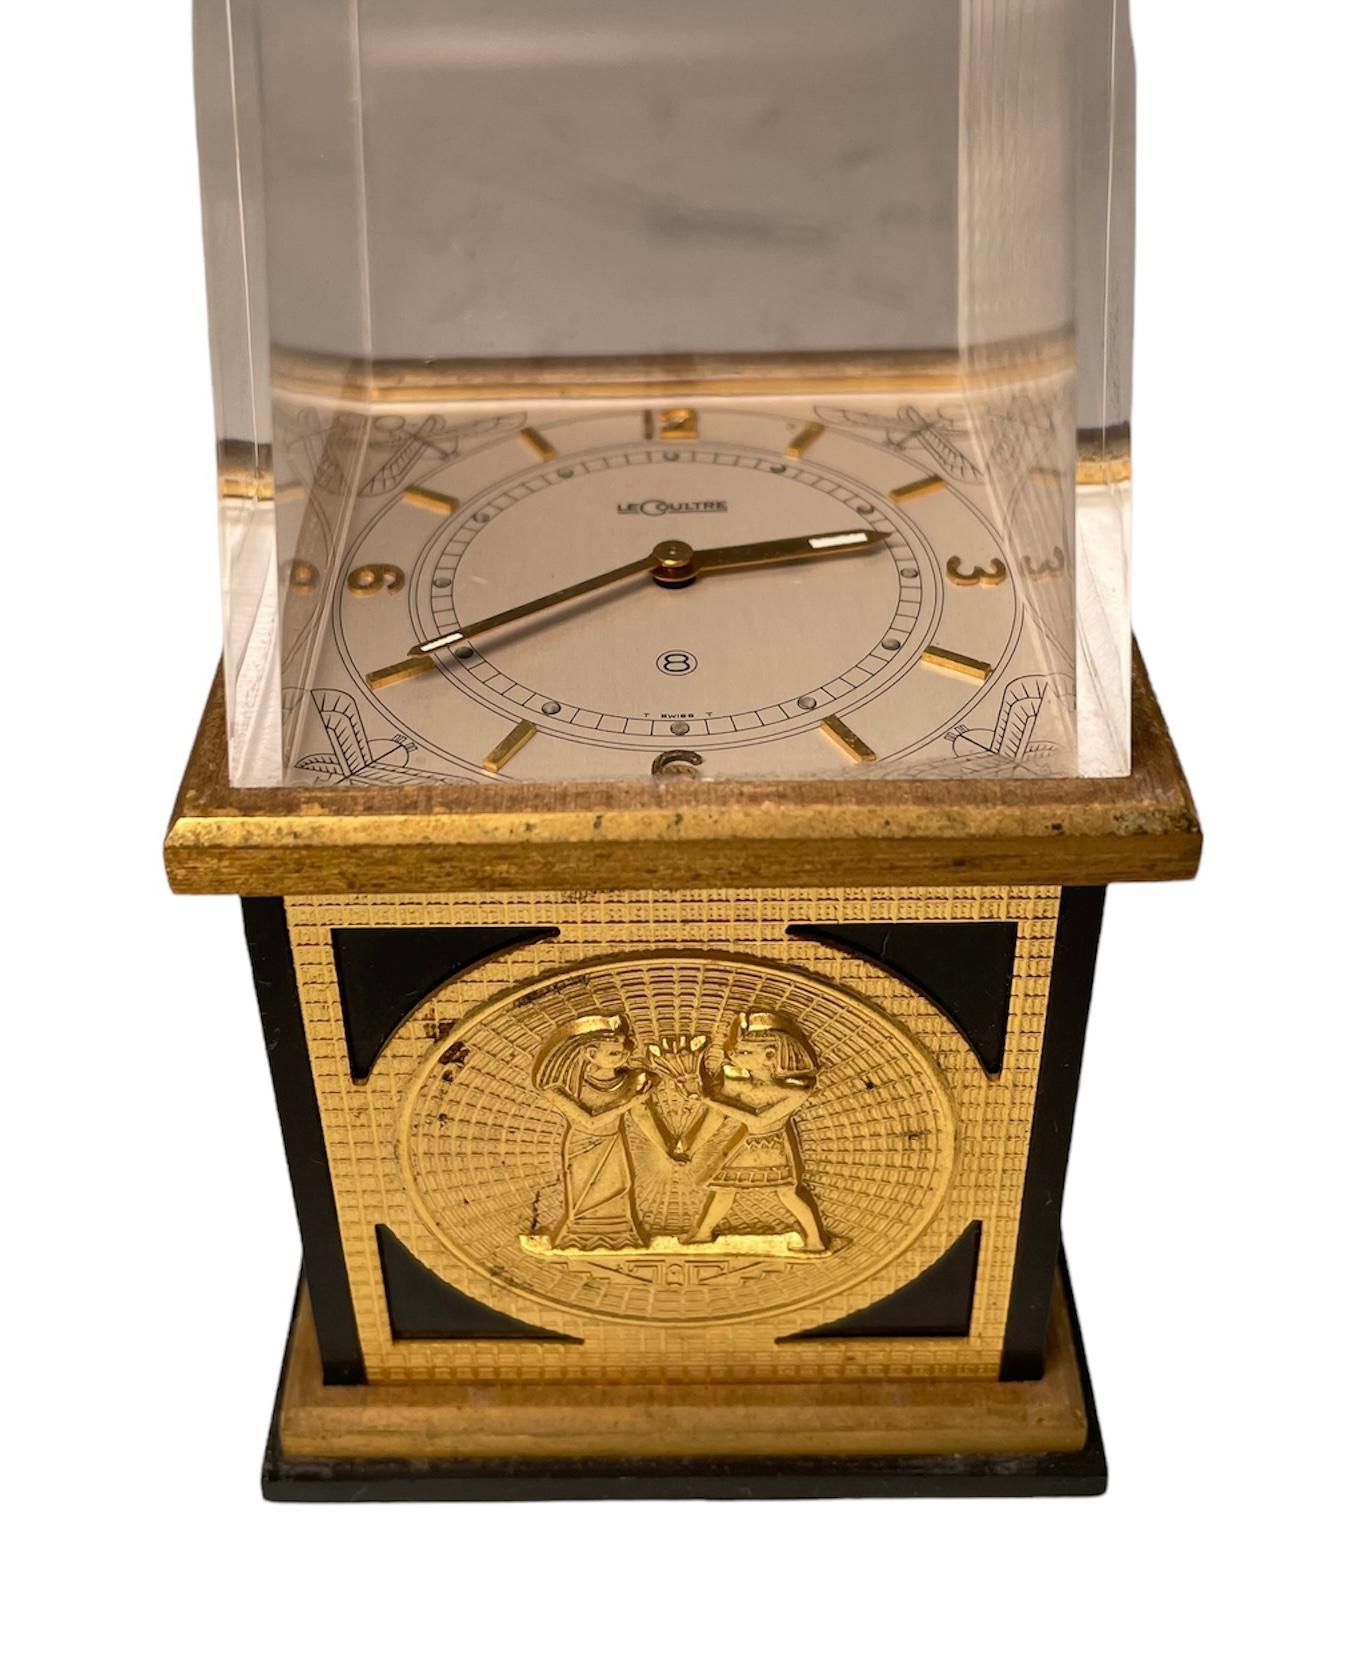 Brass Egyptian Revival Jaeger LeCoultre Desk/Table Clock